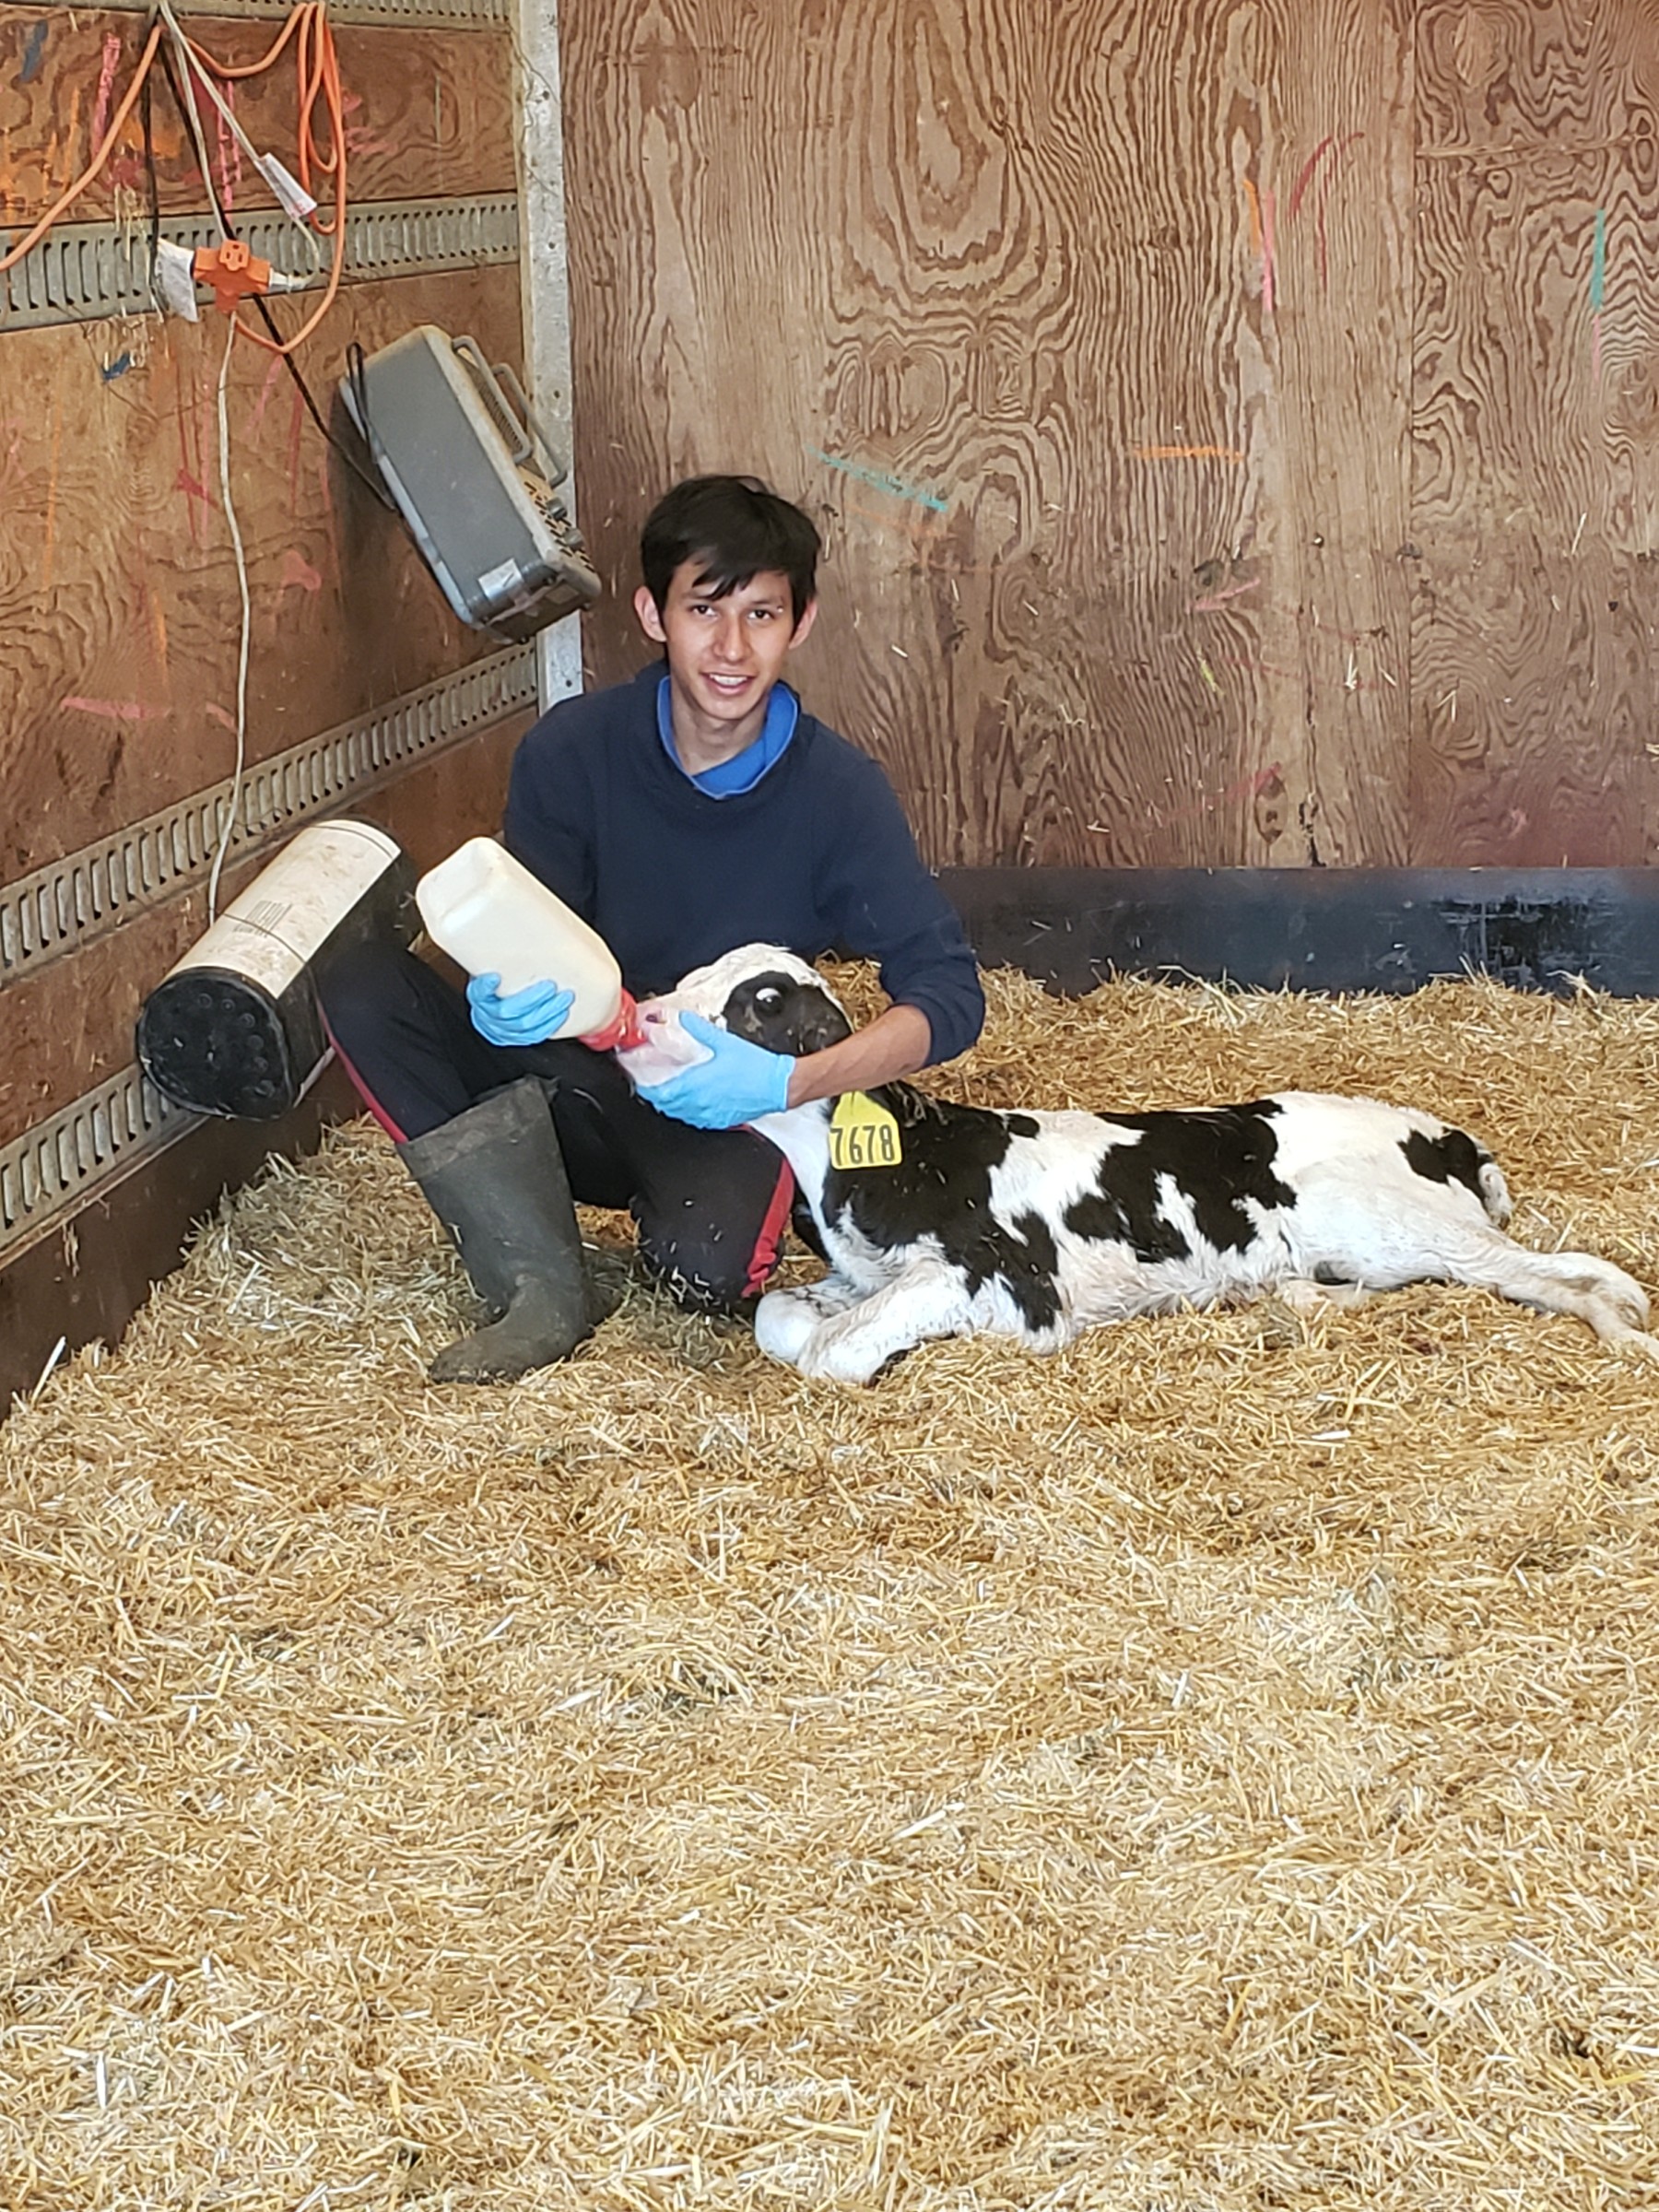 Feeding a calf